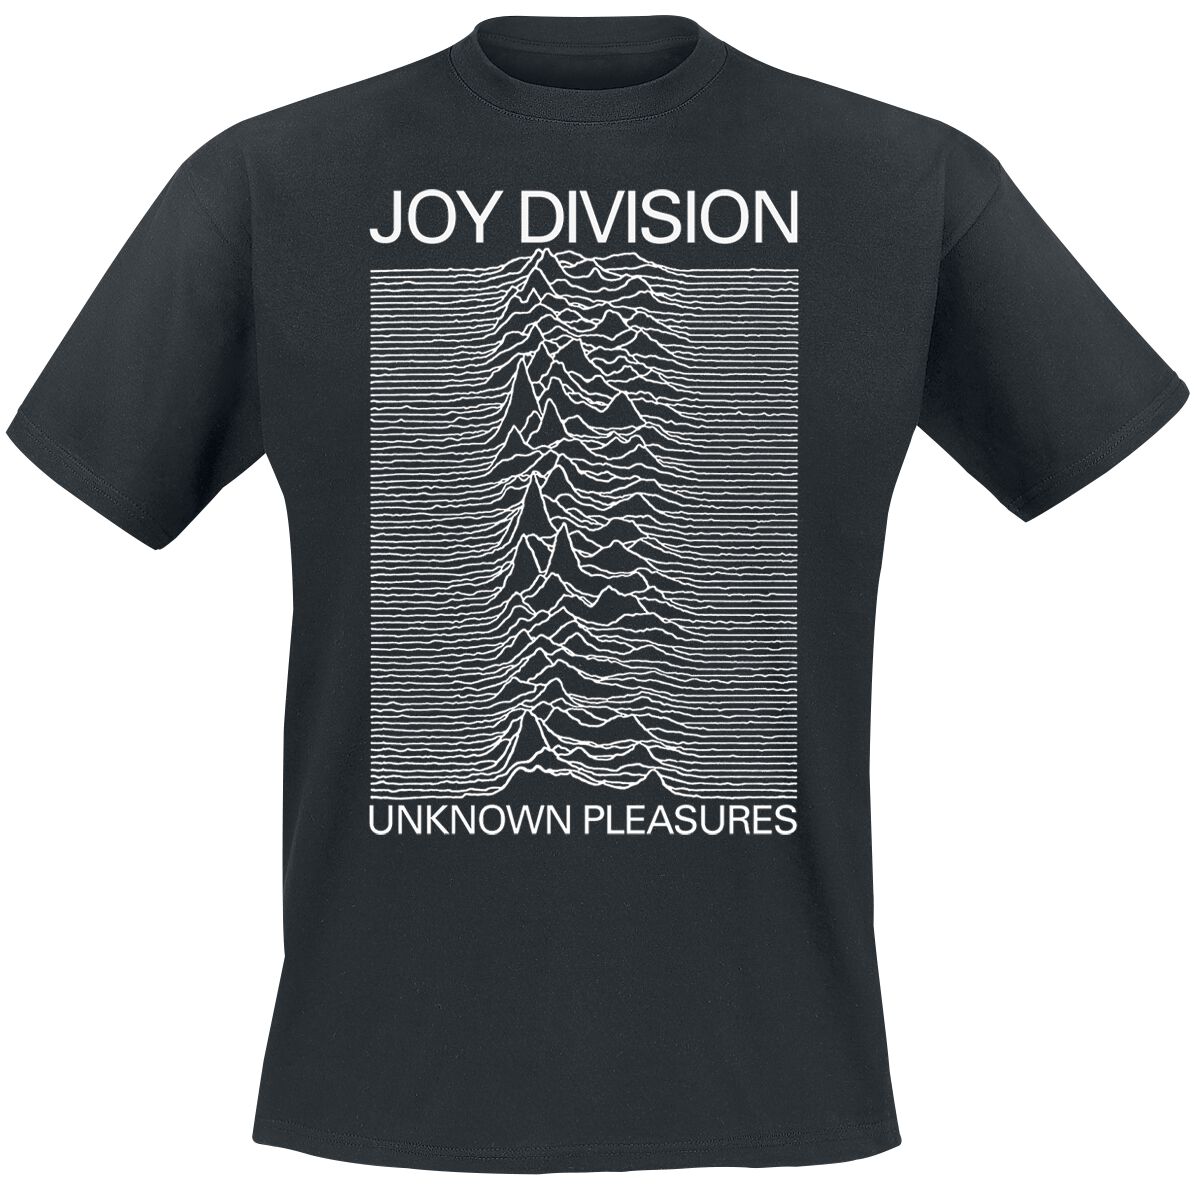 joy division t-shirt - unknown pleasures - s bis xxl - fÃ¼r mÃ¤nner - grÃ¶ÃŸe s - - lizenziertes merchandise! schwarz